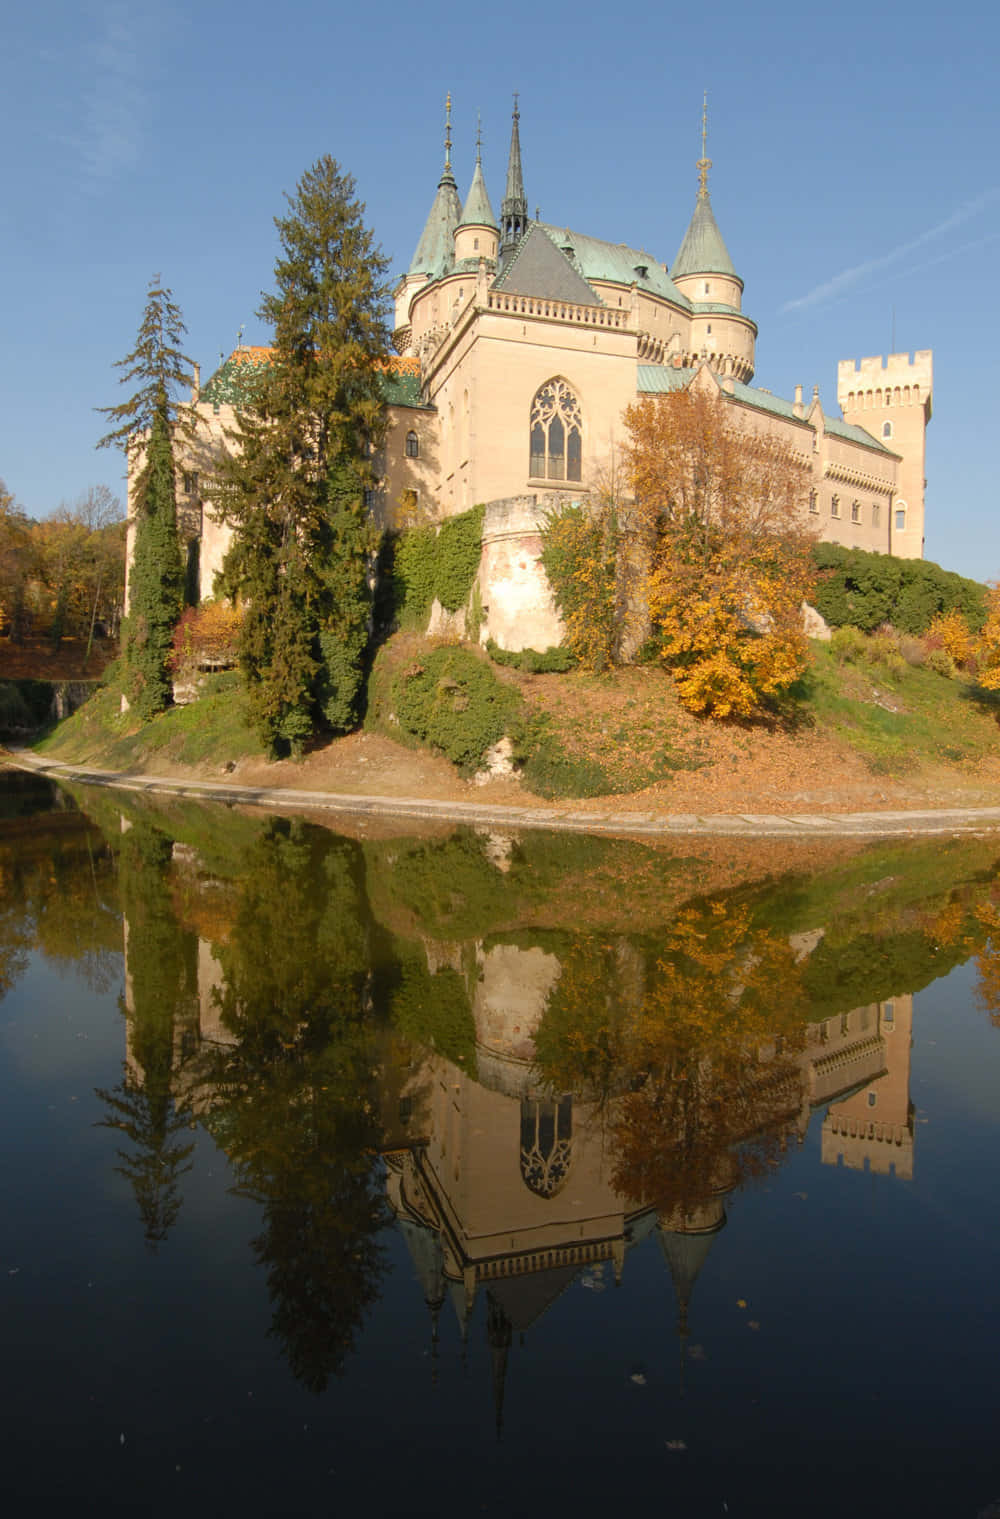 Spiegelungvon Bojnice Castle Im Wasser. Wallpaper